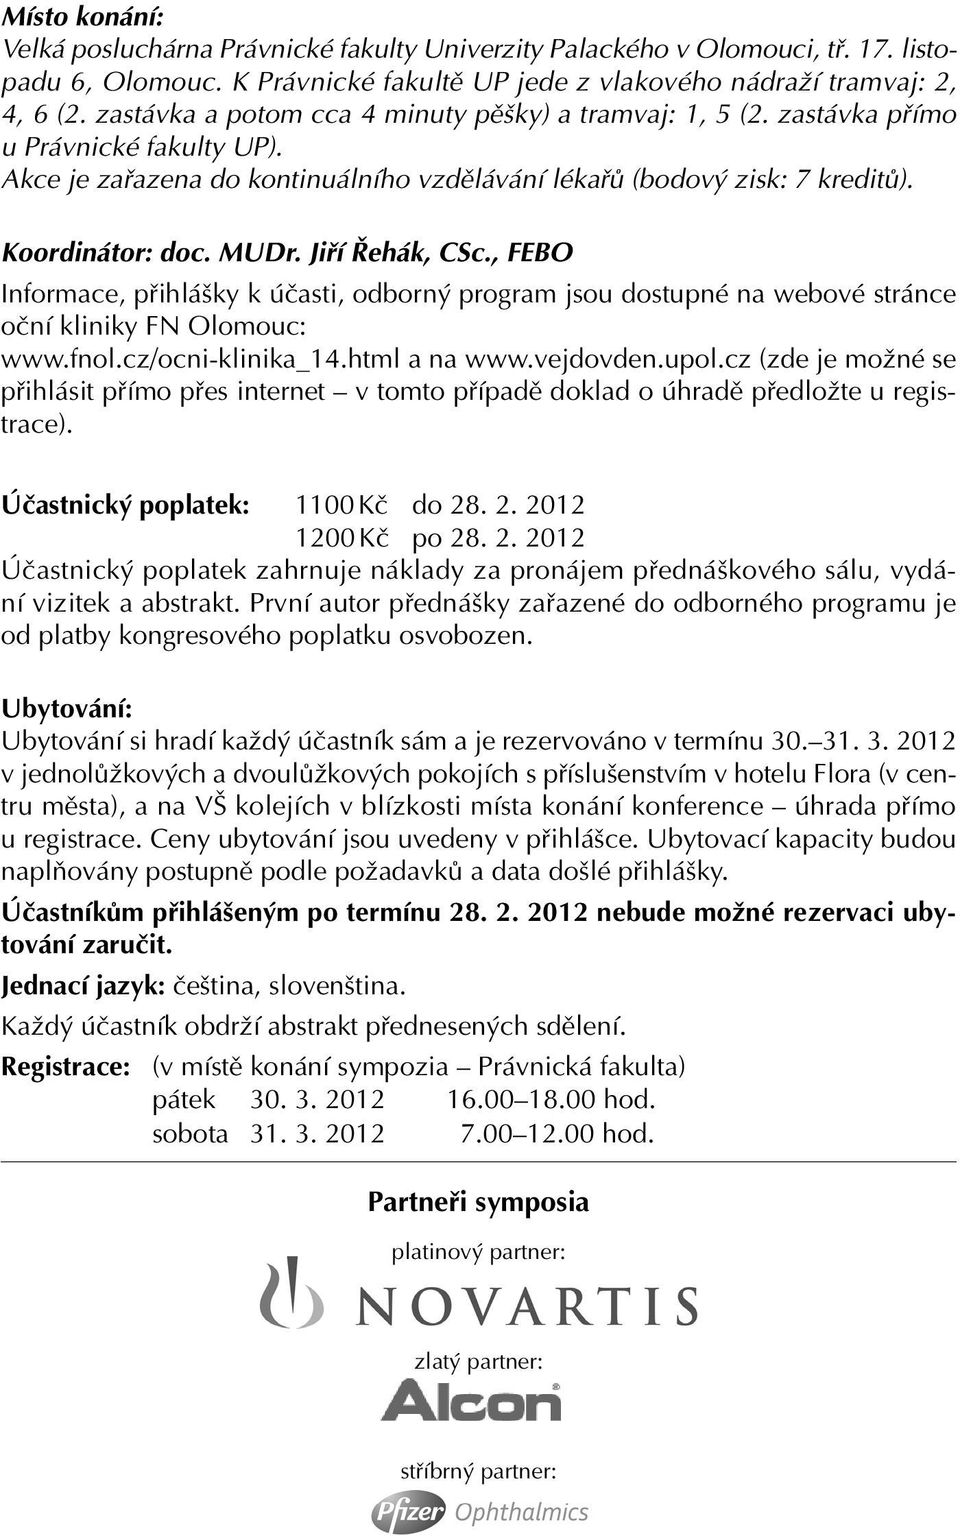 Jiří Řehák, CSc., FEBO Informace, přihlášky k účasti, odborný program jsou dostupné na webové stránce oční kliniky FN Olomouc: www.fnol.cz/ocni-klinika_14.html a na www.vejdovden.upol.